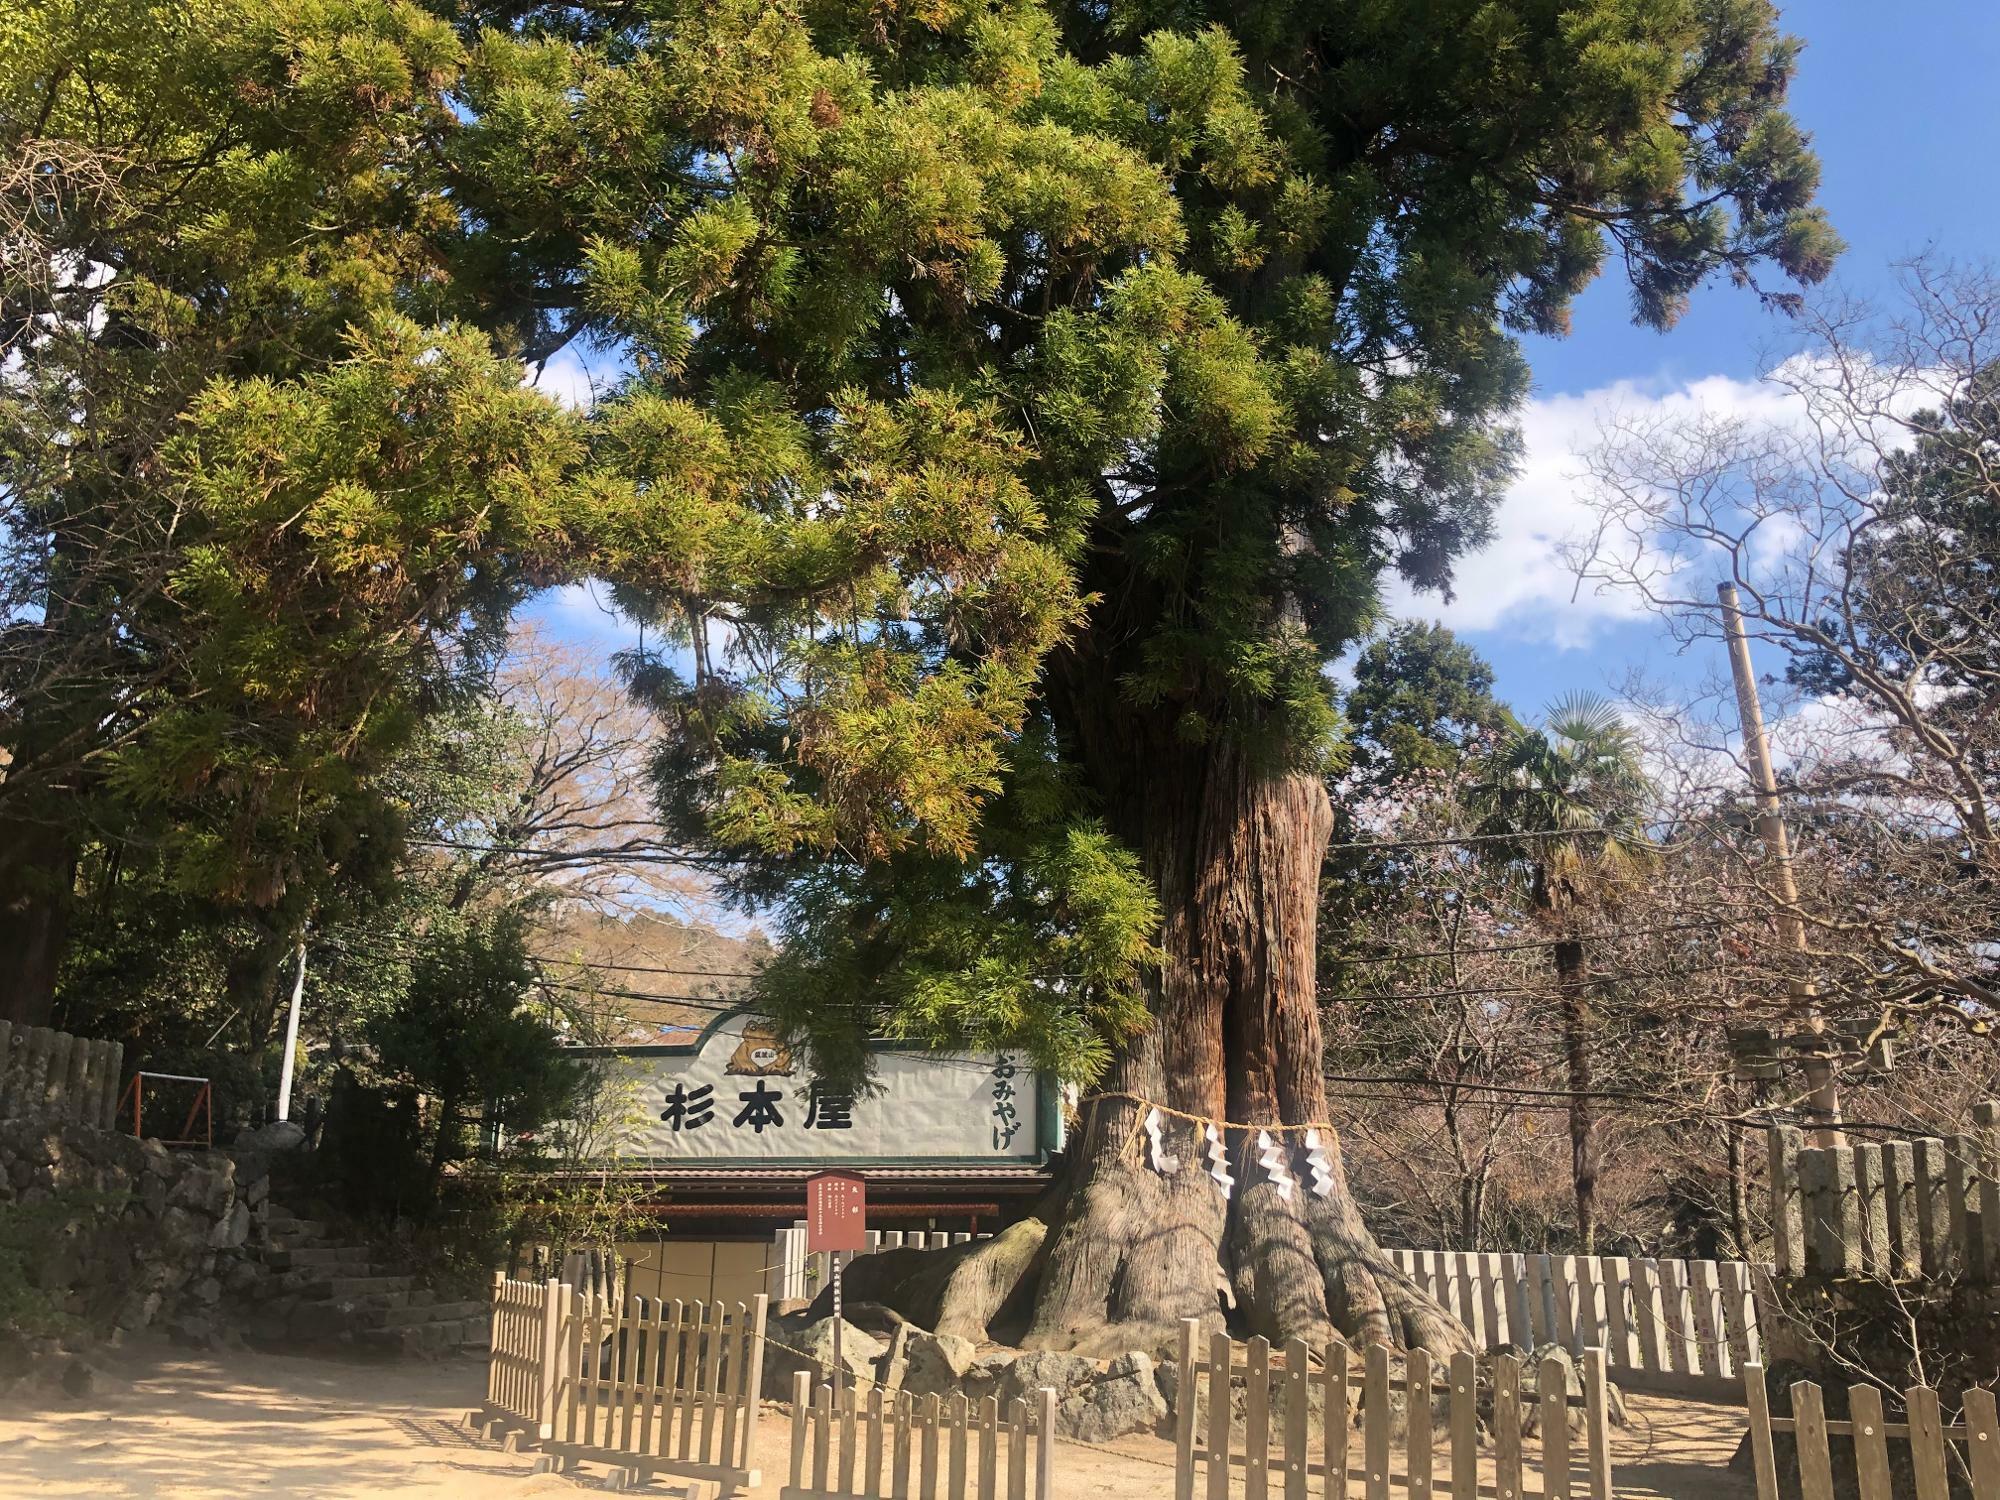 稲葉さんのおばあちゃんのお店「筑波山杉本屋」目の前にあるのが筑波山神社の大杉（御神木）